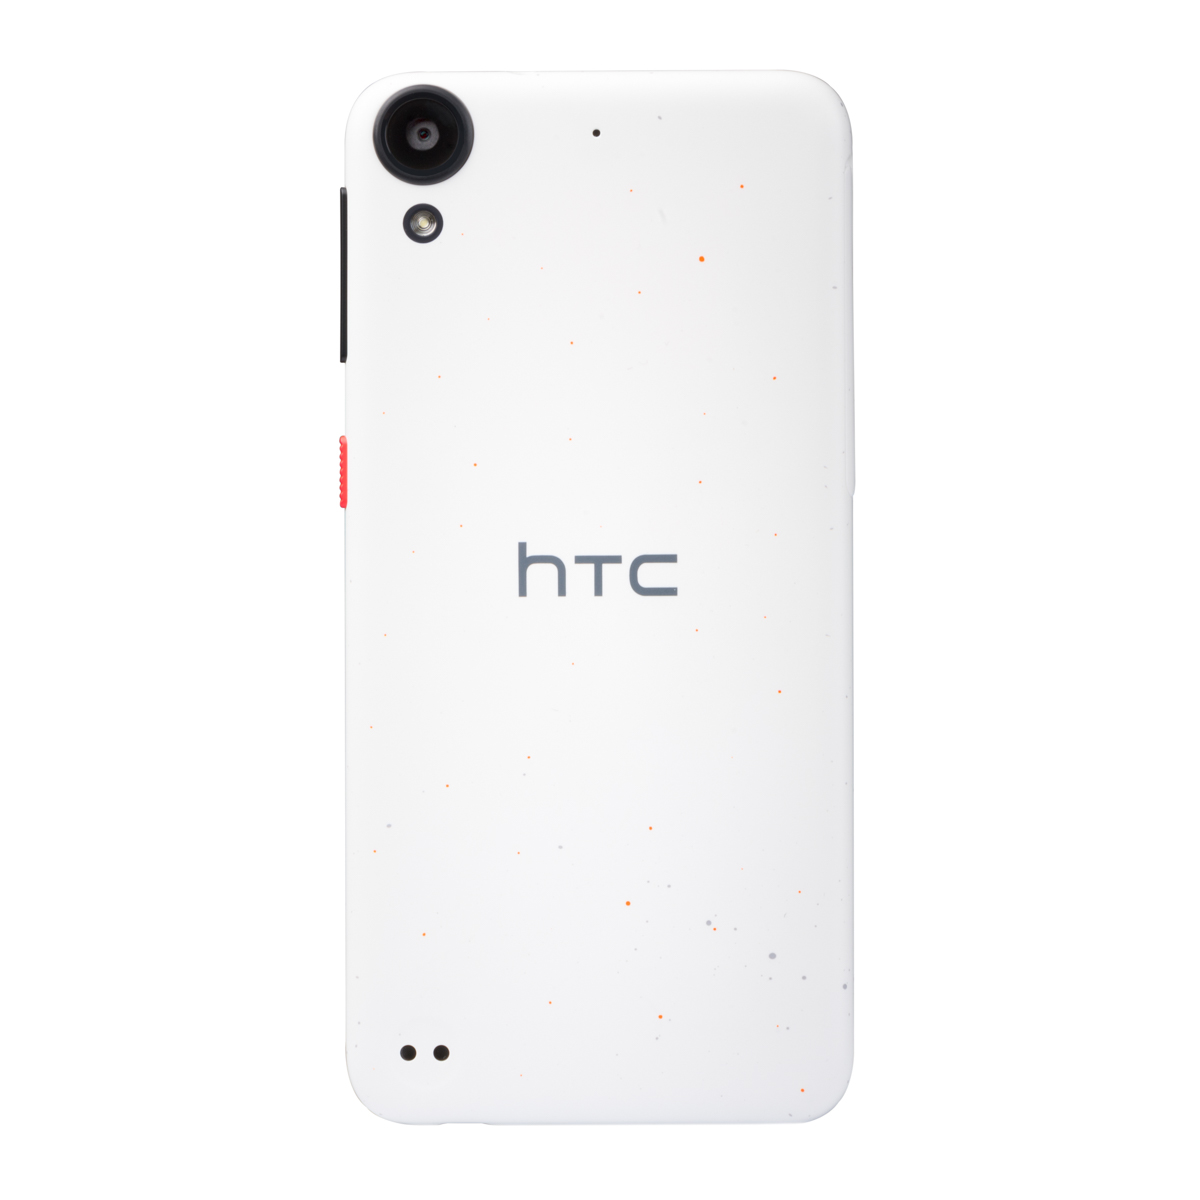 HTC-530-02.jpg